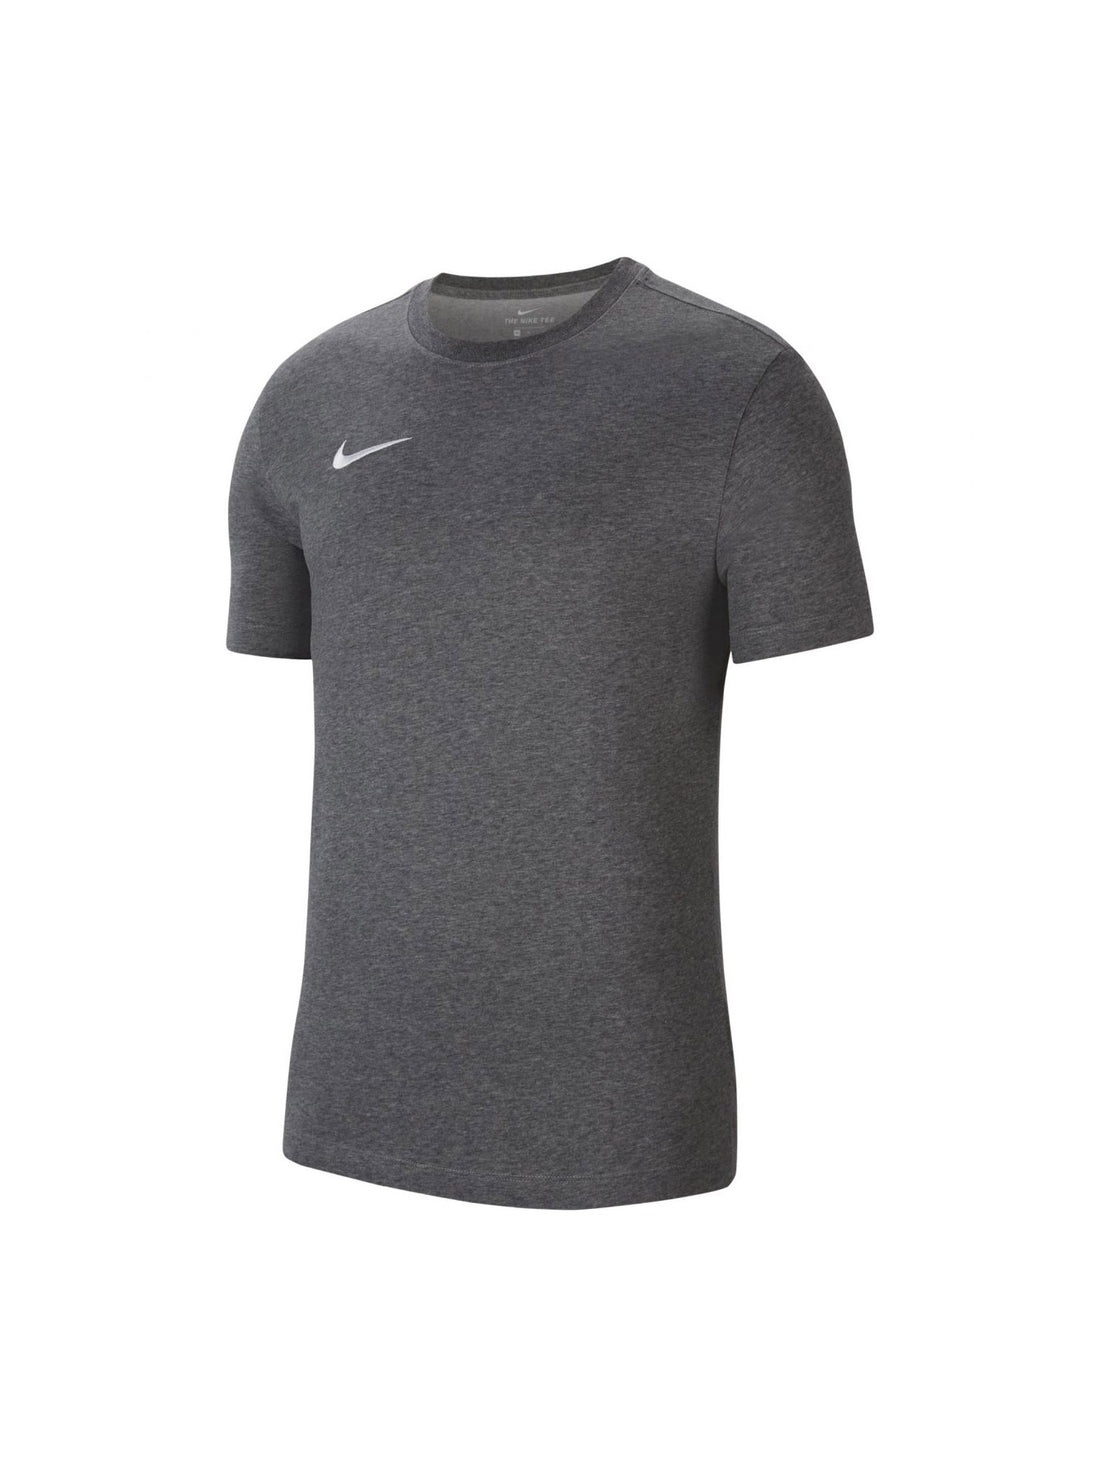 T-shirt Grigio Nike